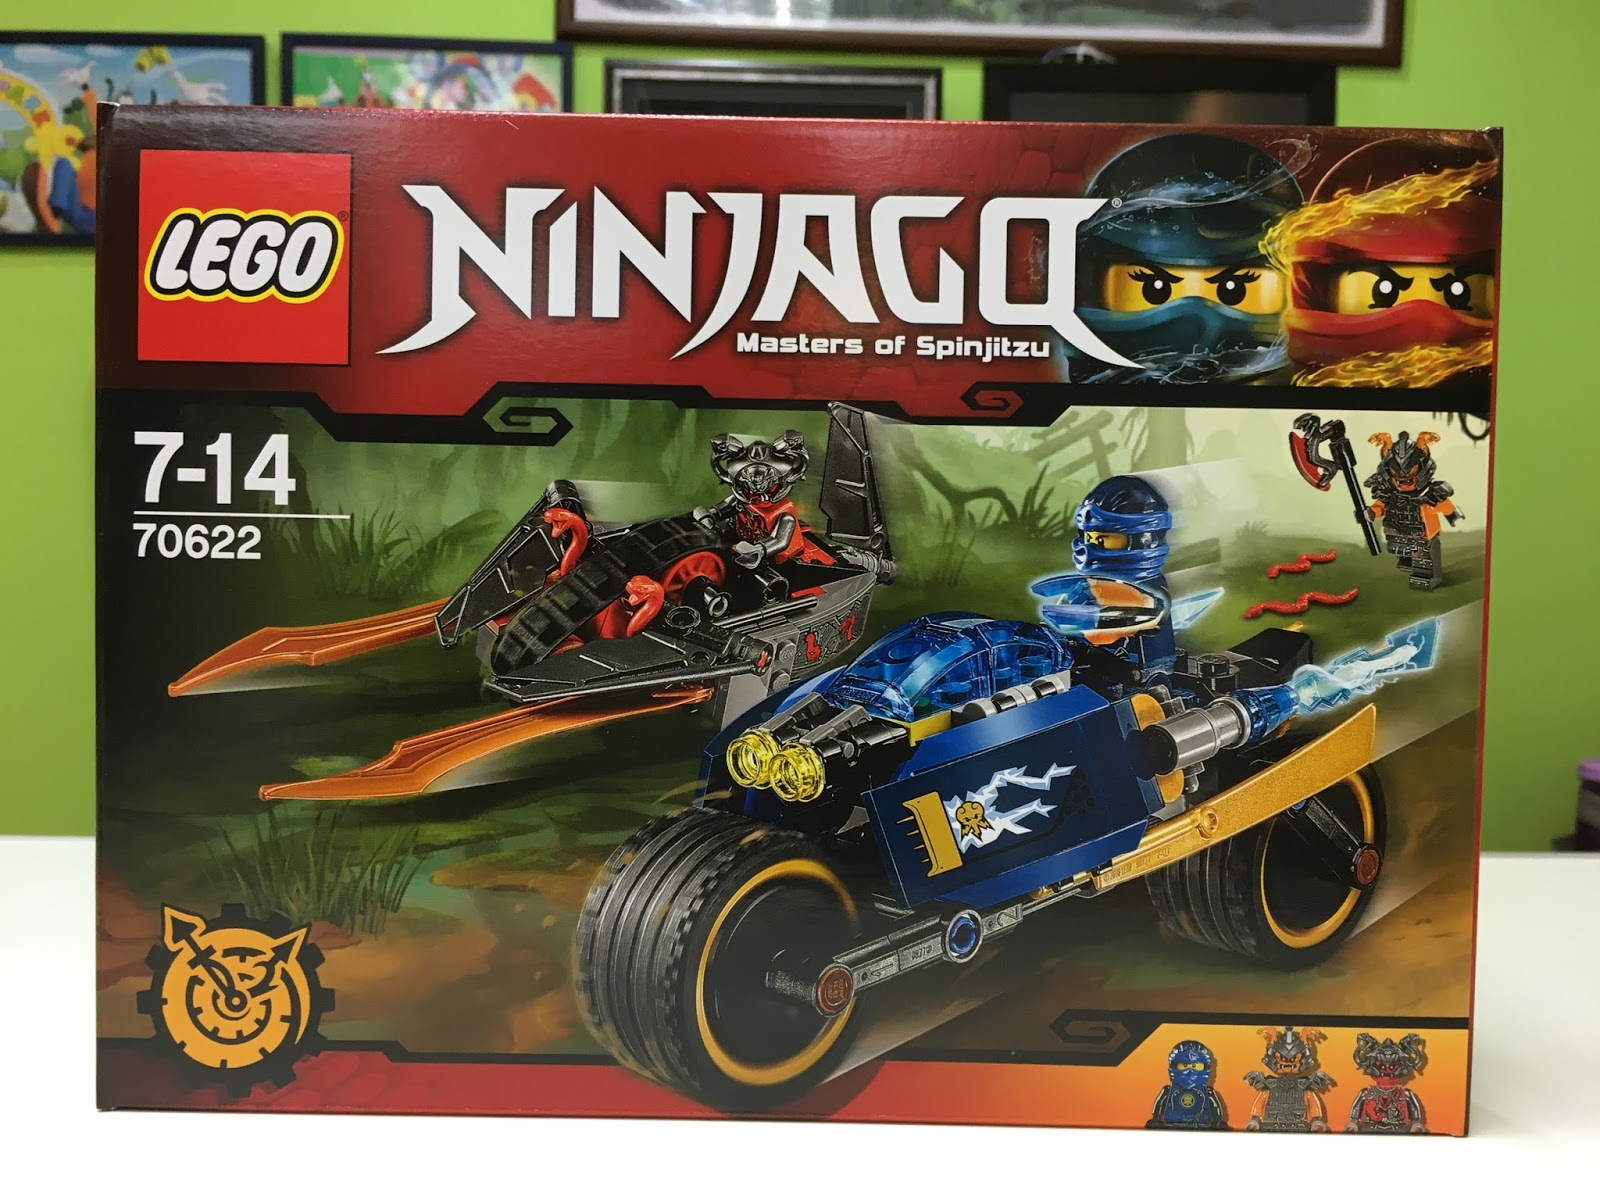 Foresight tomorrow Chap DeToyz: New 2017 LEGO Ninjago Sets Stock arrive!